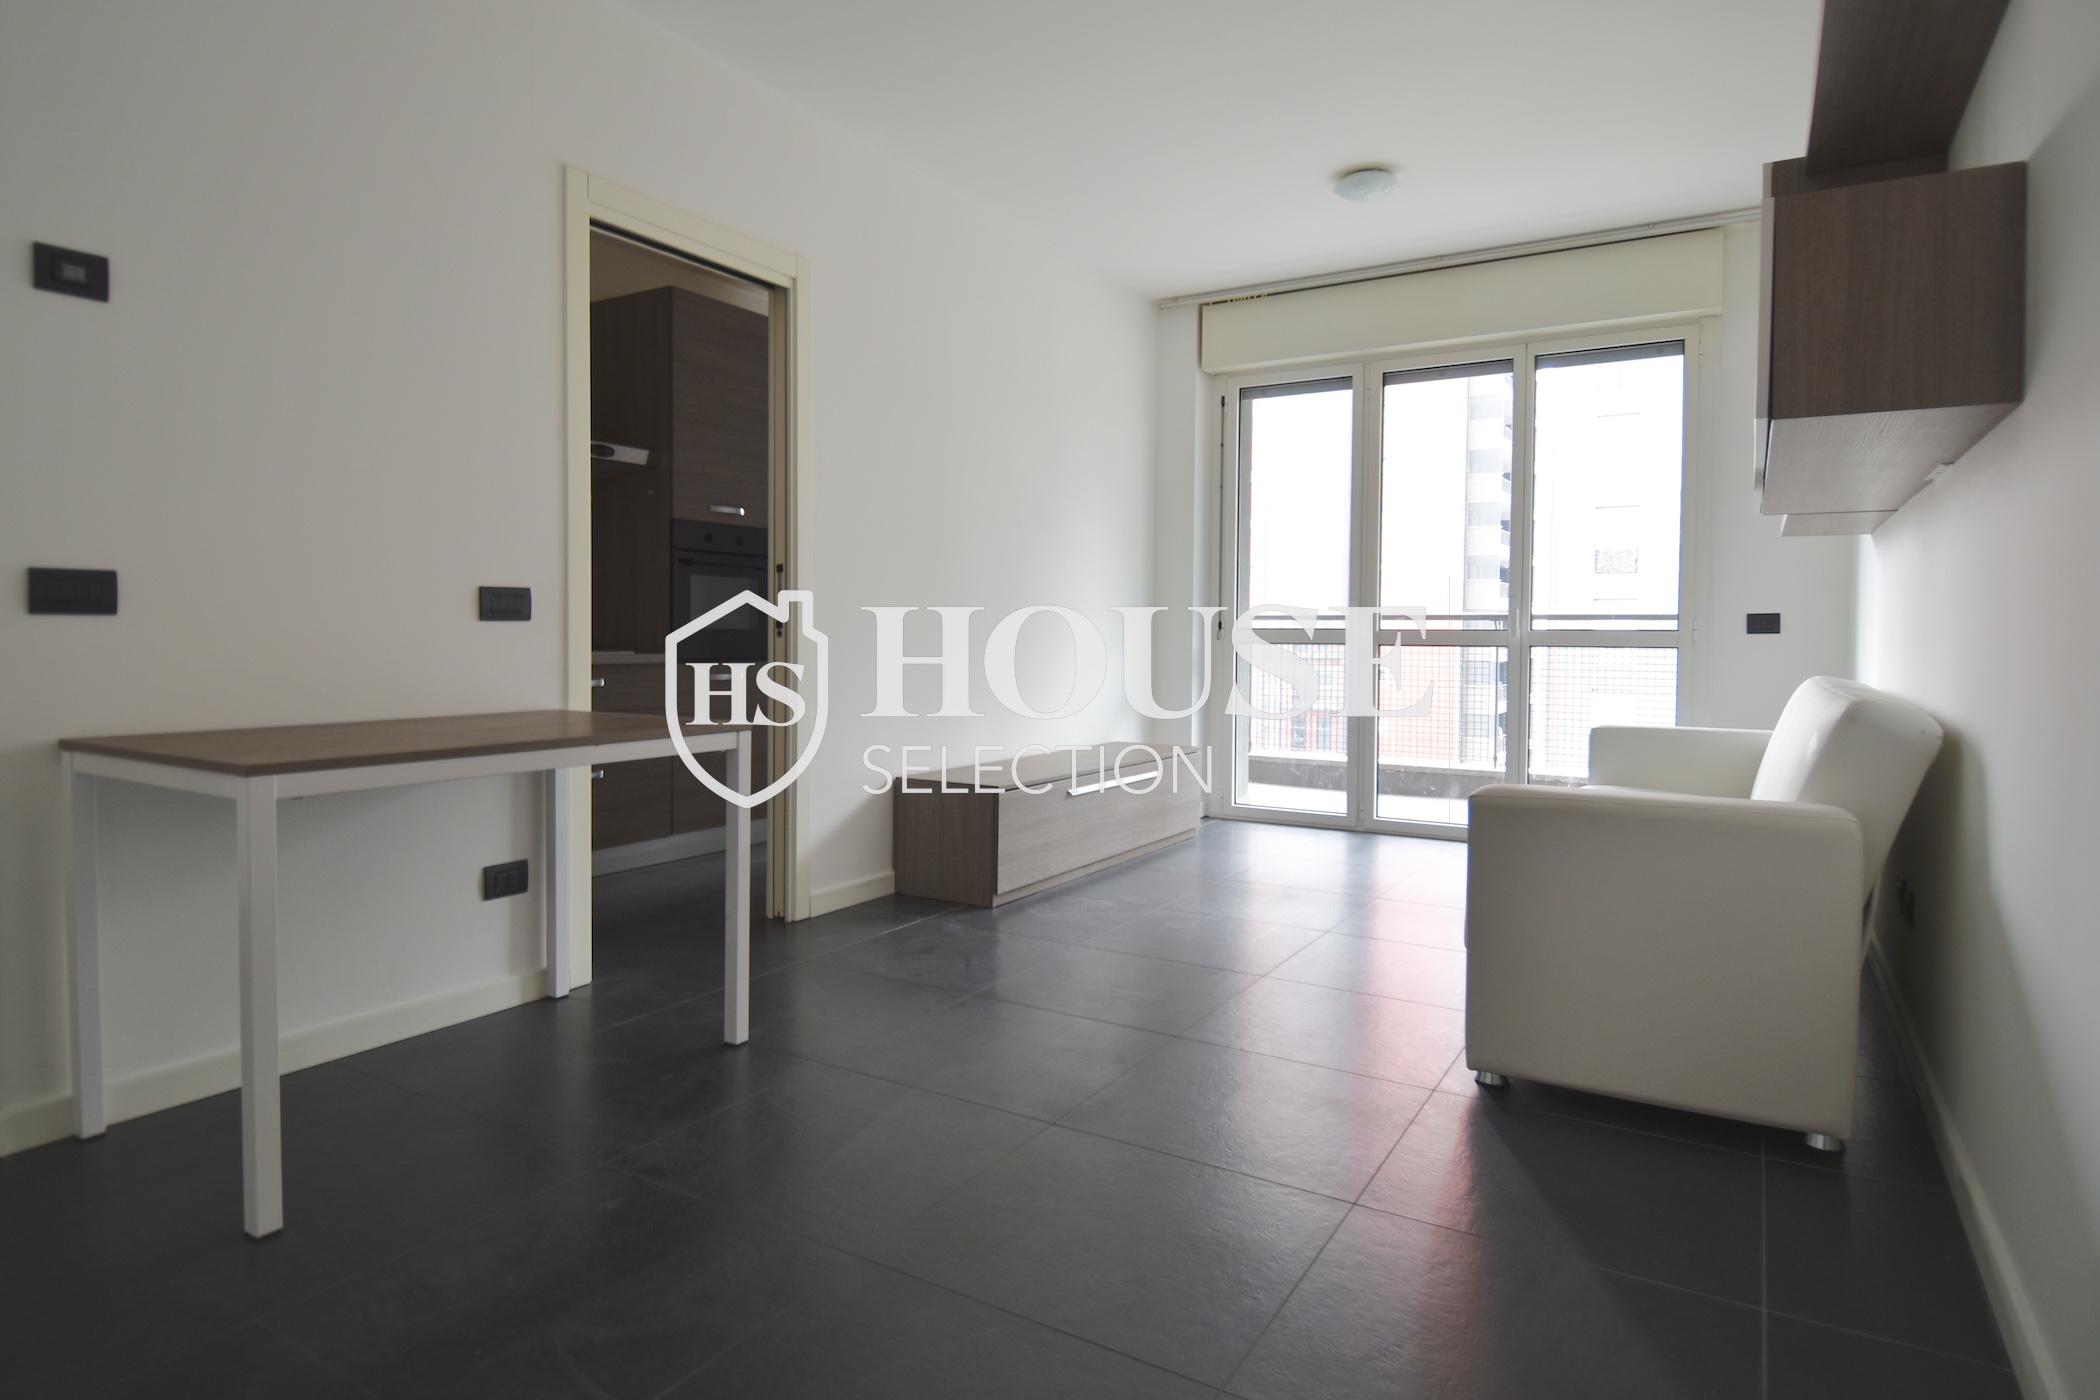 Vendita appartamento con terrazzo Bovisa, ottavo piano, nuova costruzione, Politecnico di Milano 2